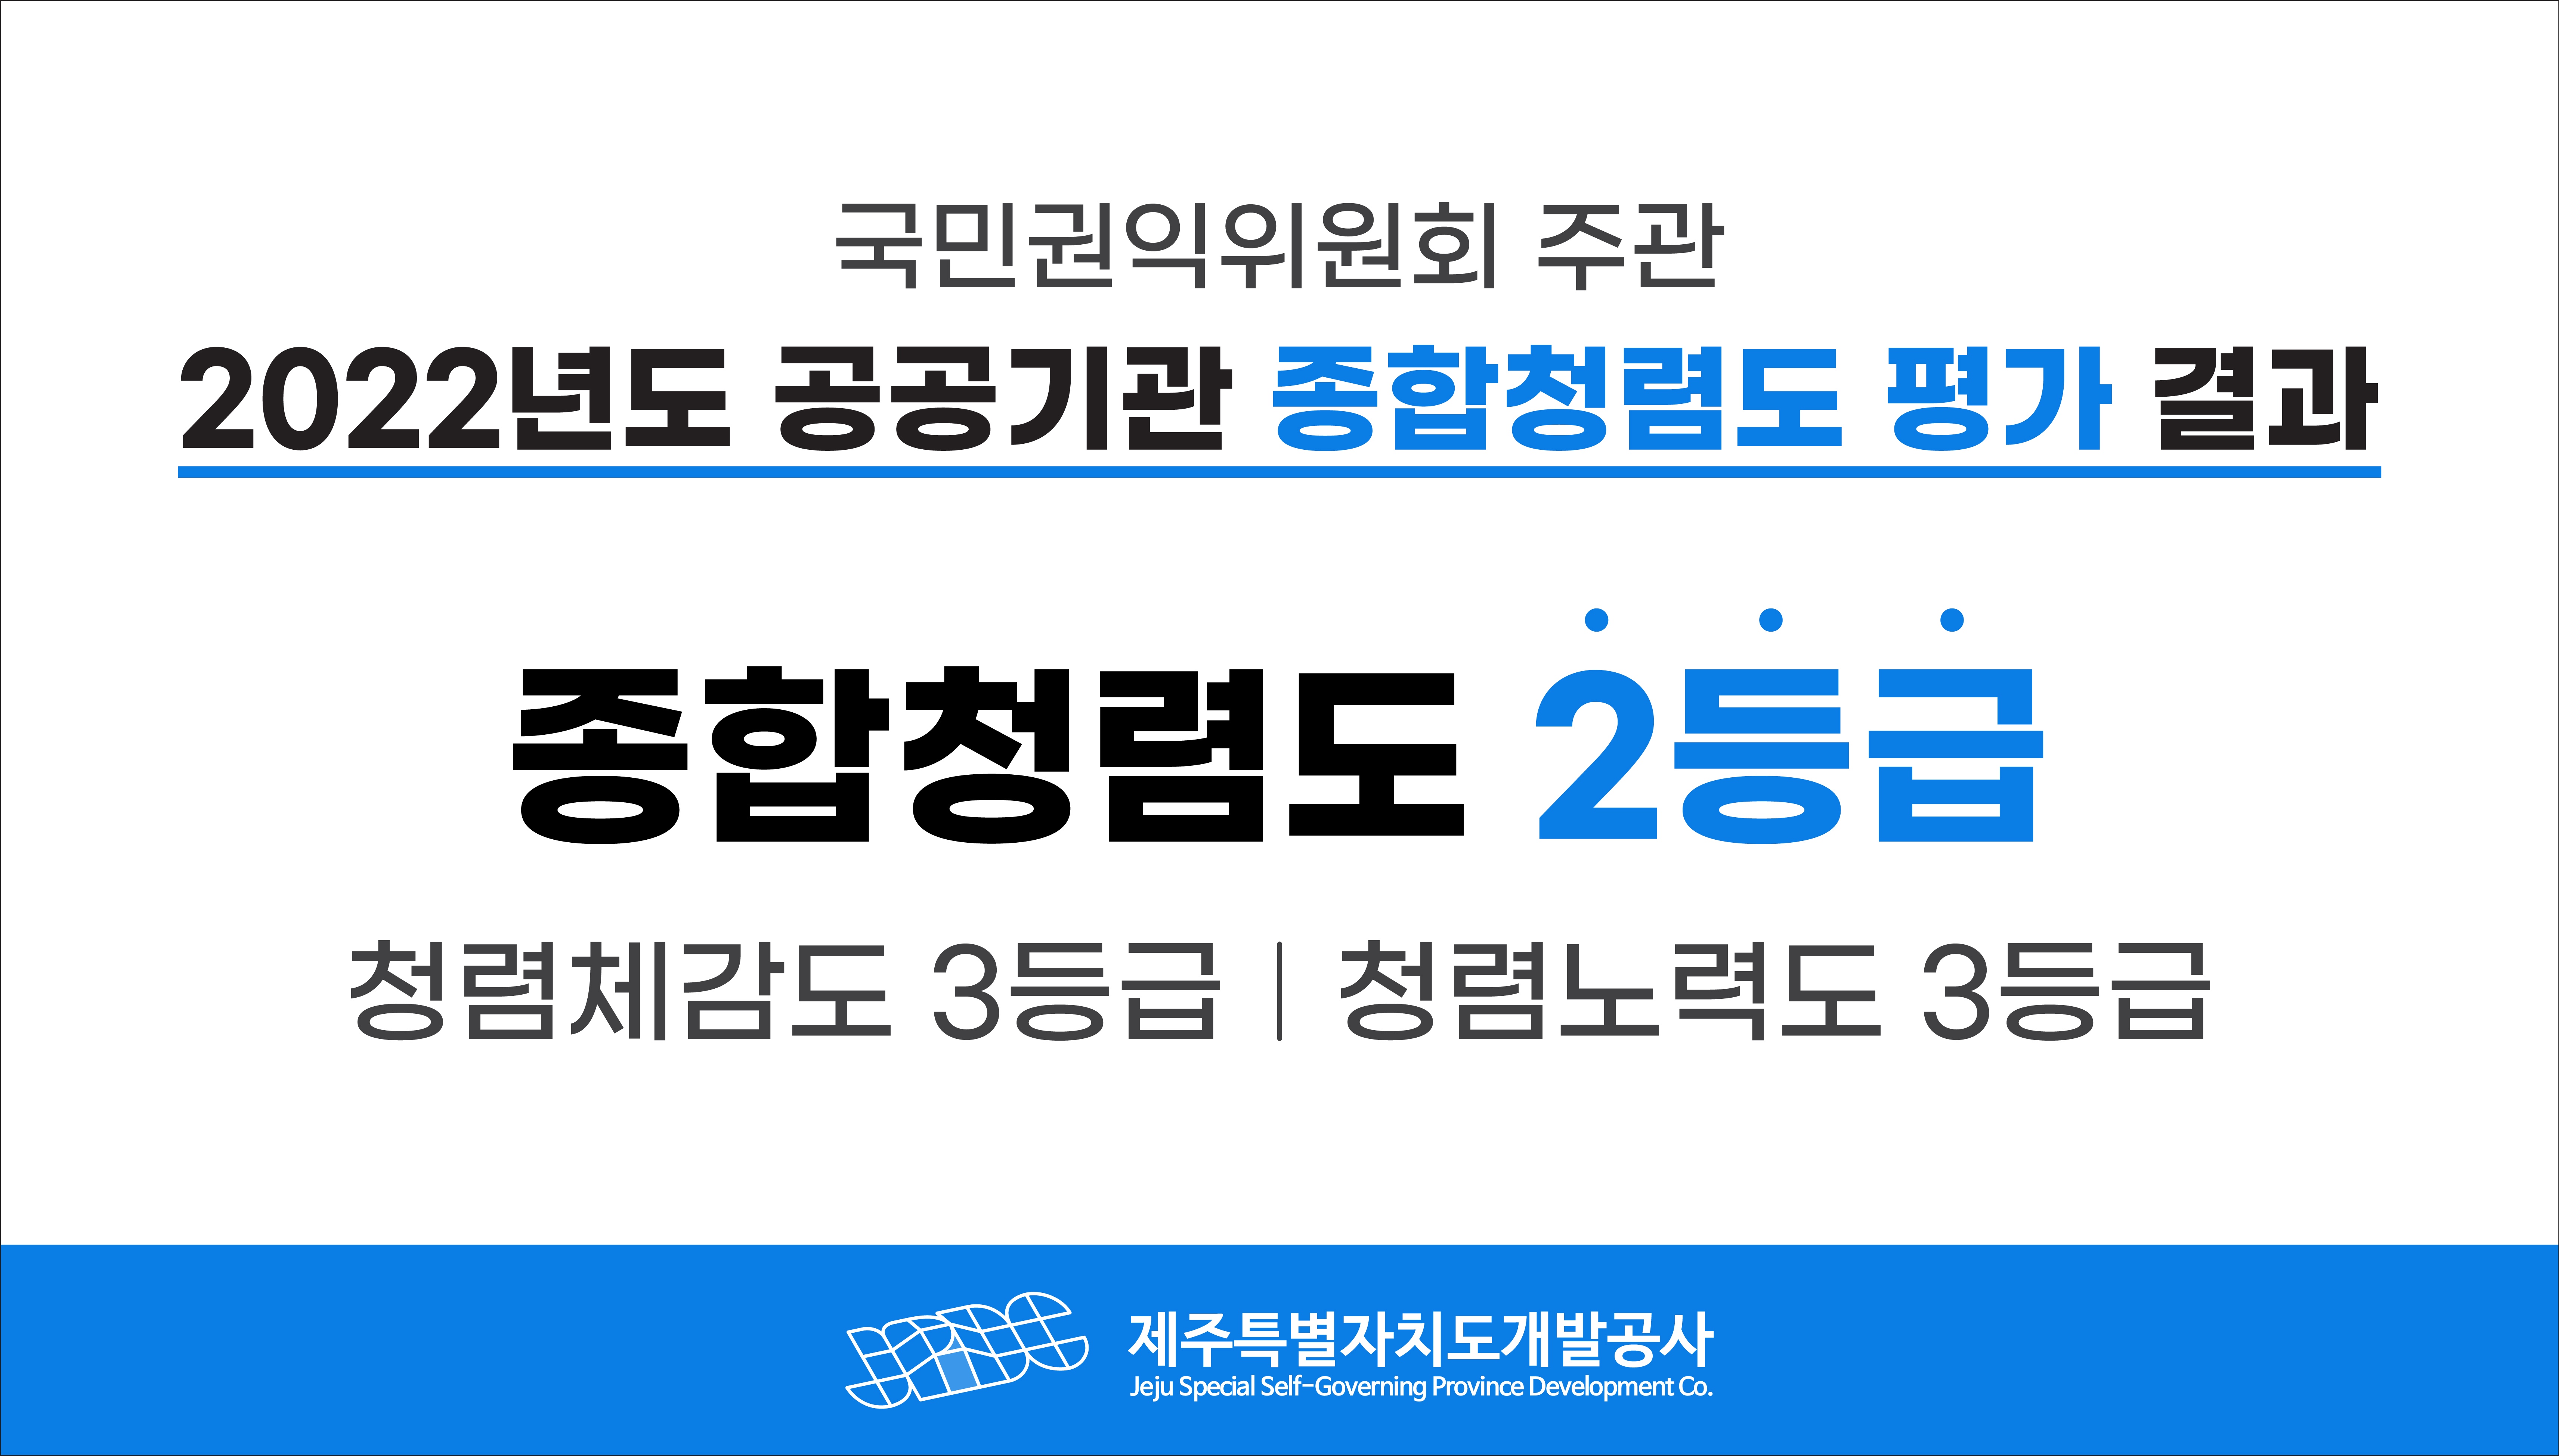 국민권익위원회 주관 2022년도 공공기관 종합청렴도 평가 결과  종합청렴도 2등급  청렴체감도 3등급  청렴노력도 3등급  JPDC 제주특별자치도개발공사  Jeju Special Self-Governing Development Co.